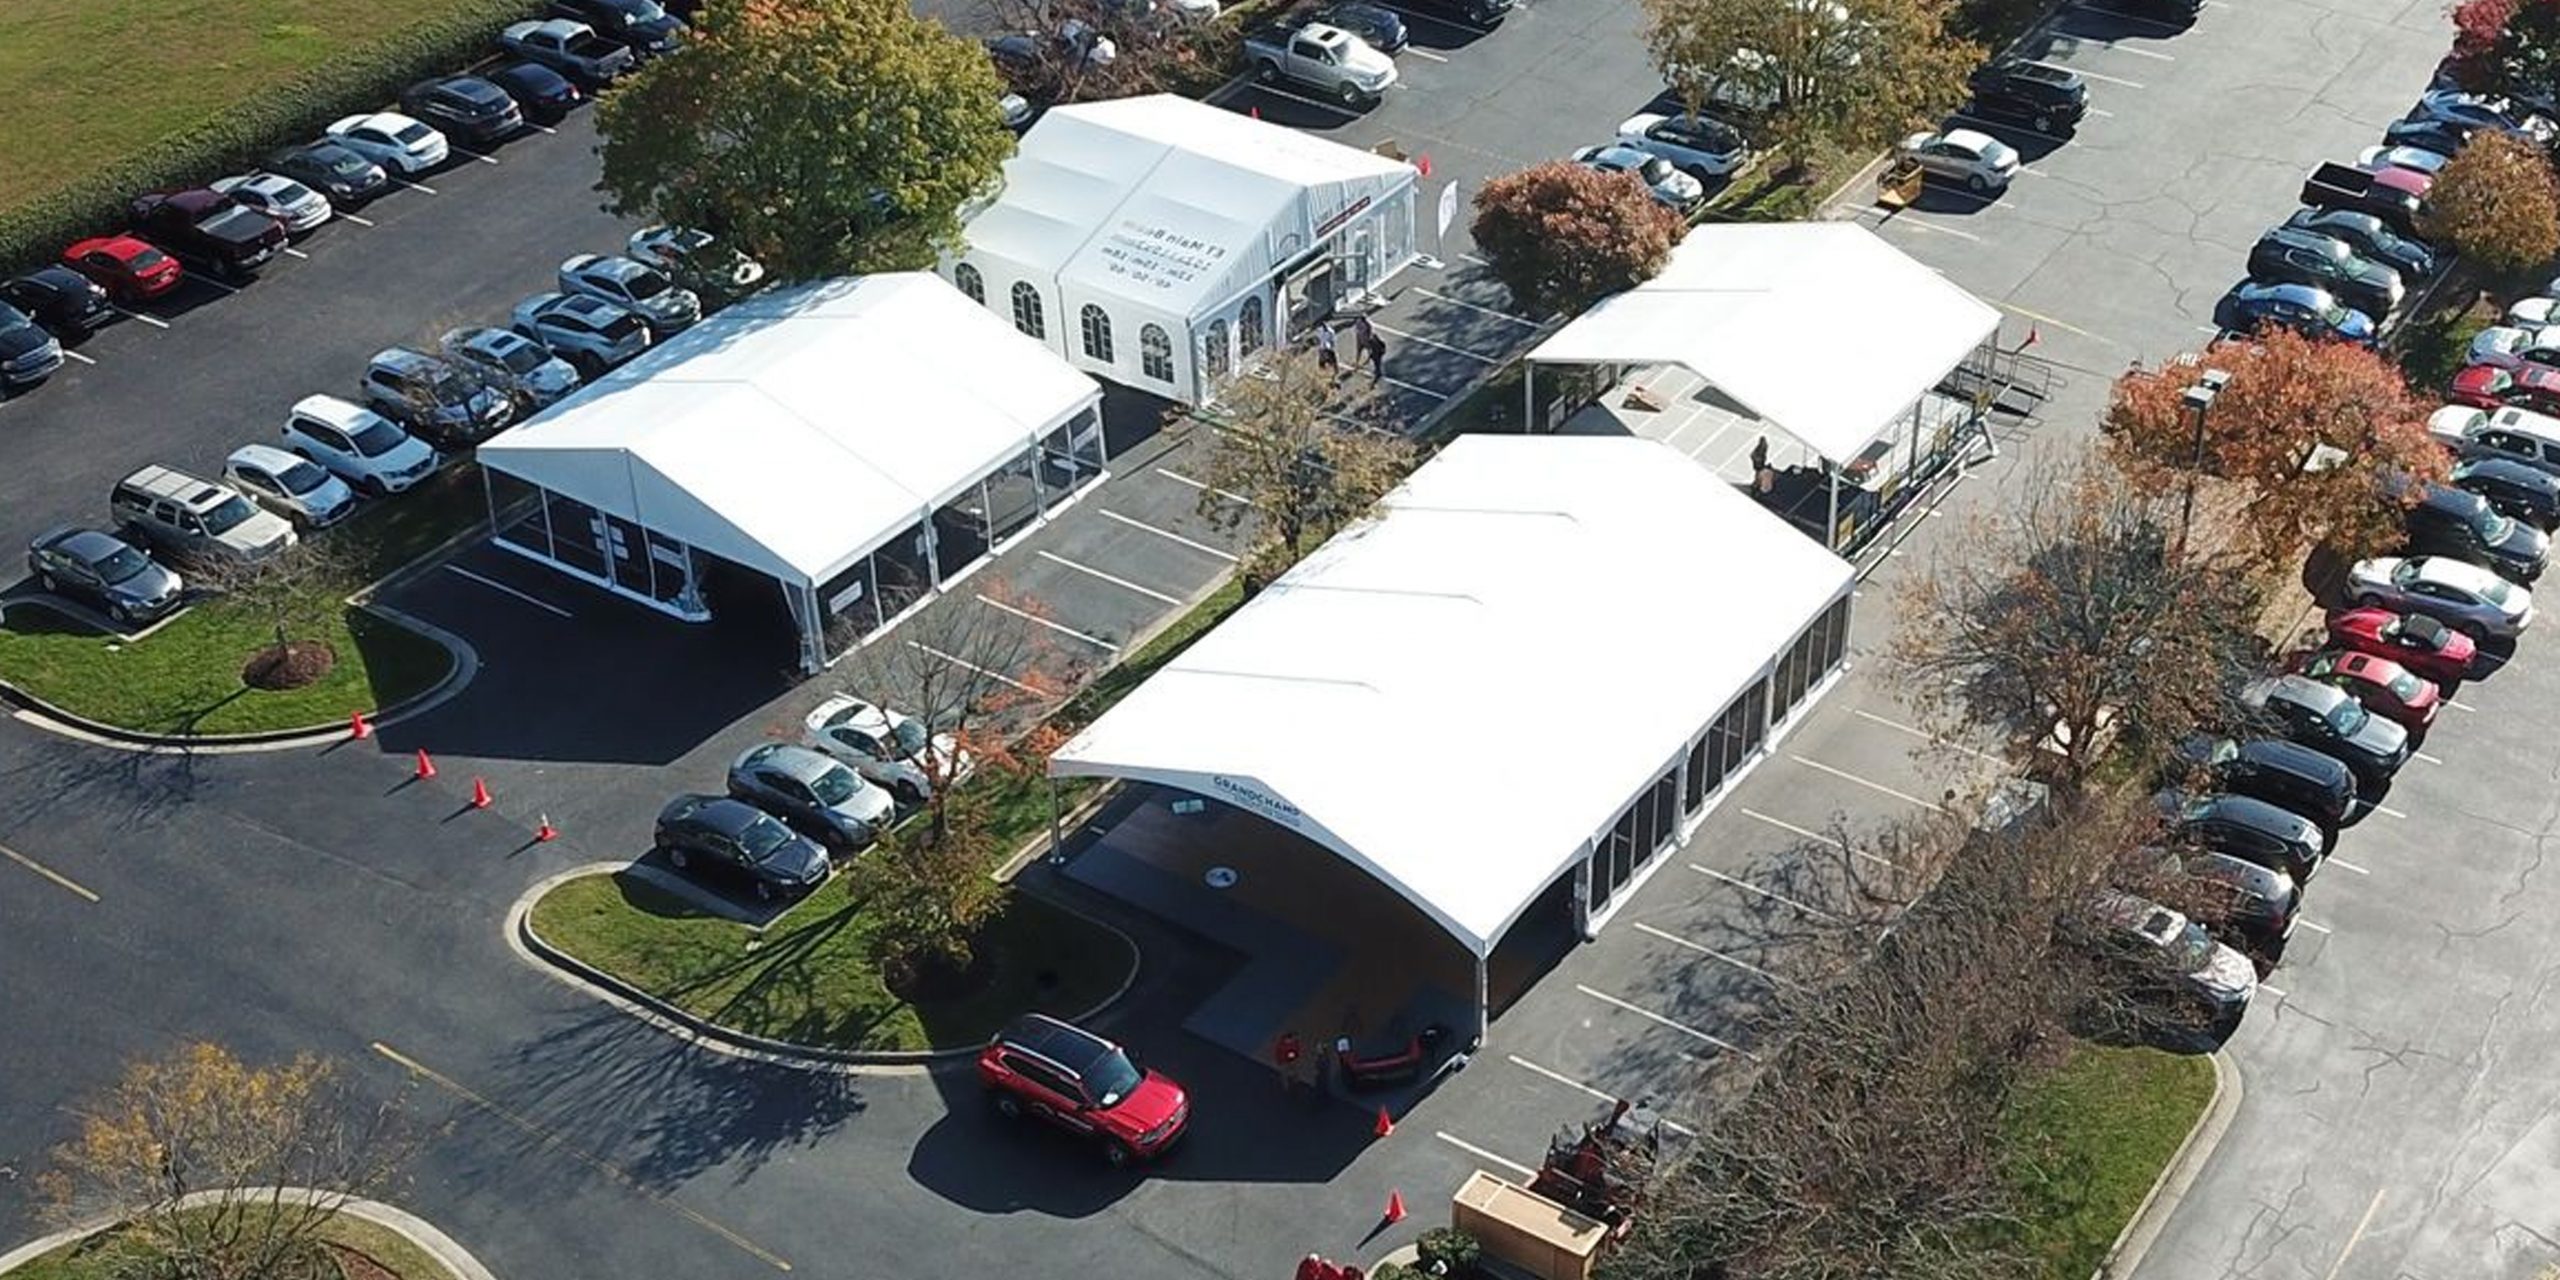 Parking Lot Structure Tent